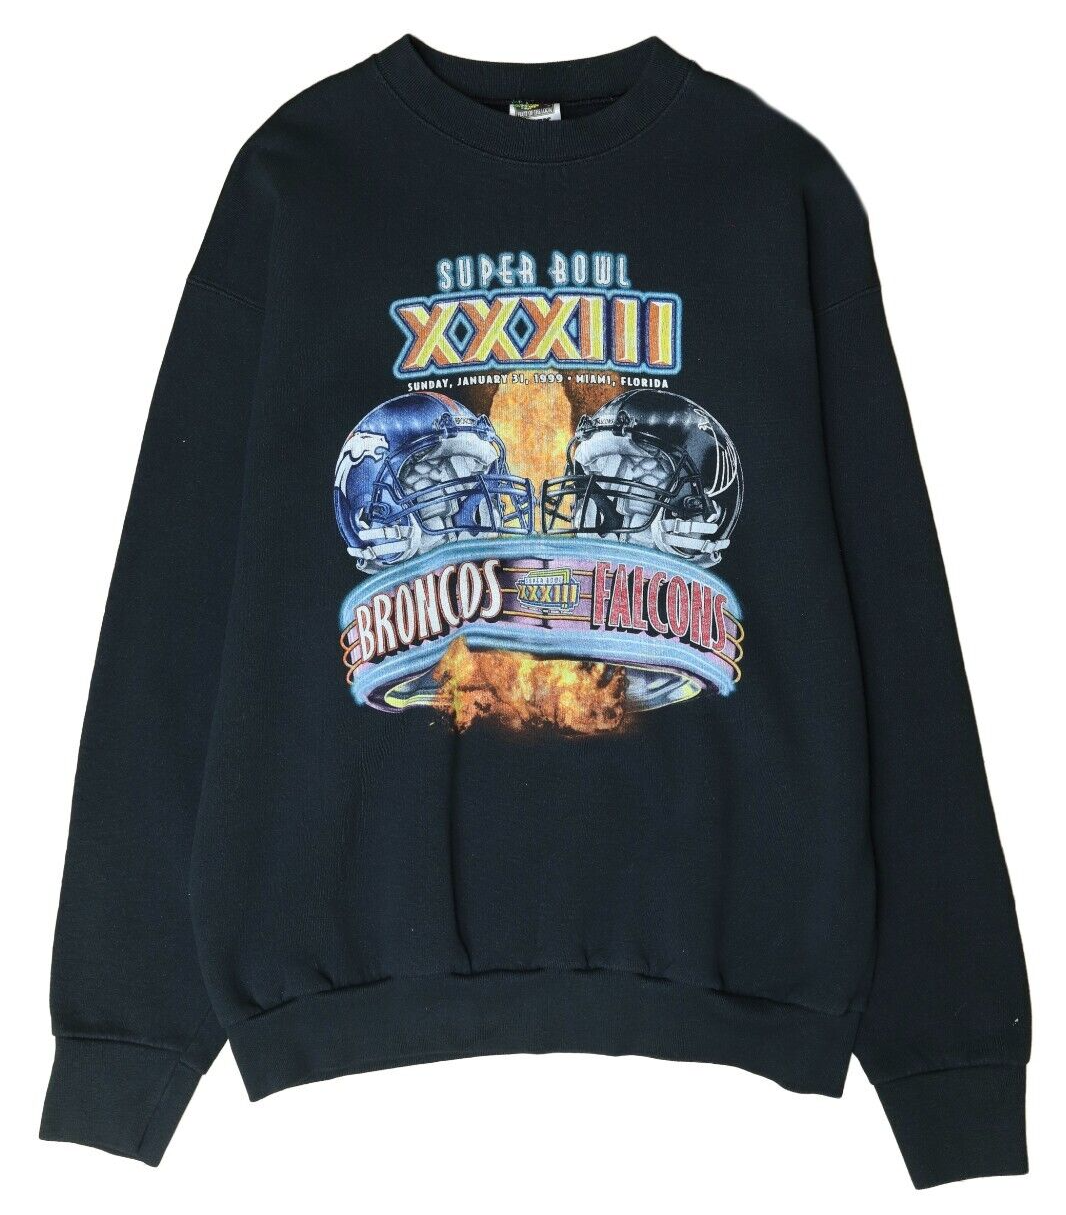 Vintage Broncos Falcons Super Bowl XXXIII Sweatshirt Size XL 1999 90s NFL